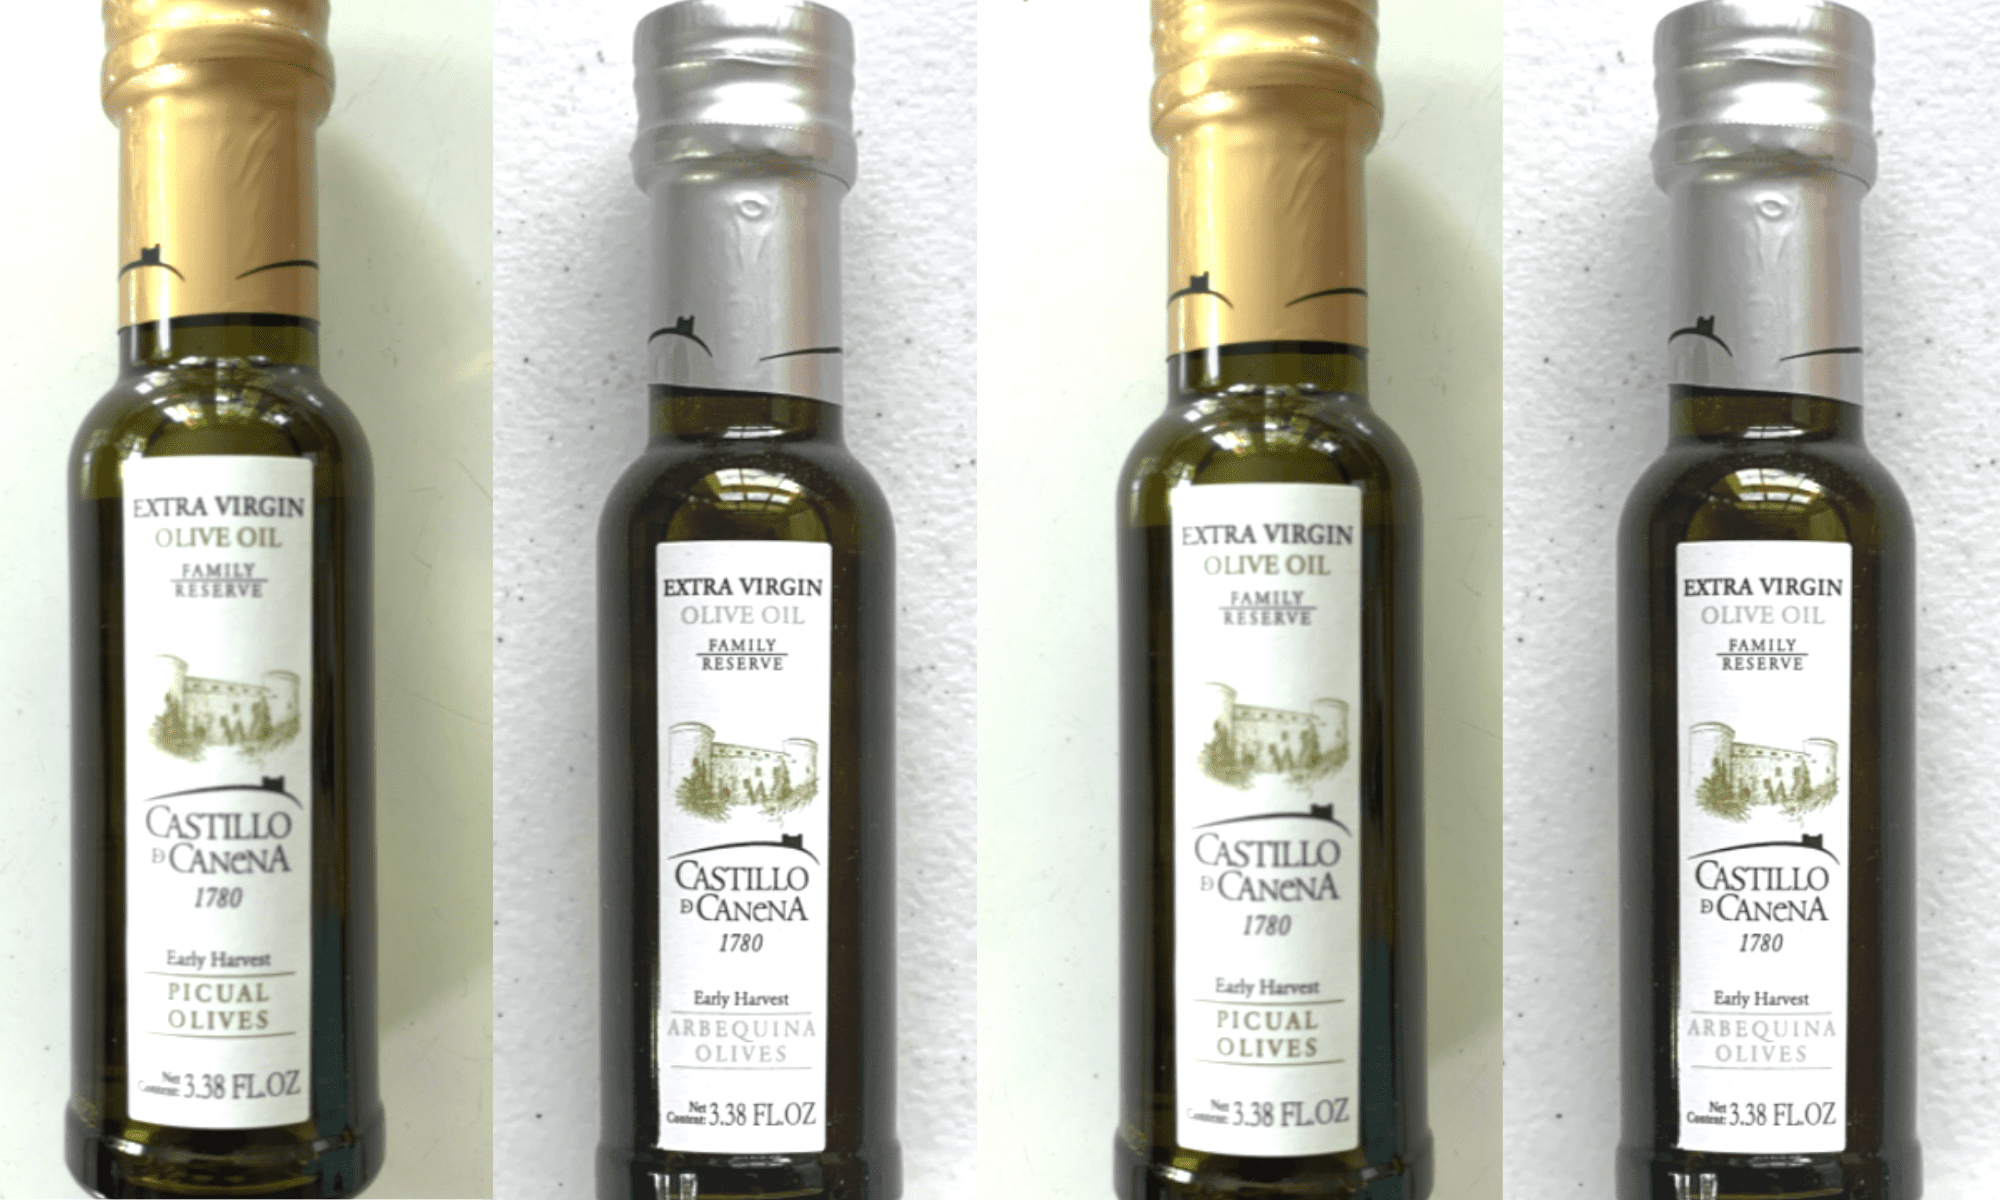 Header image of olive oils